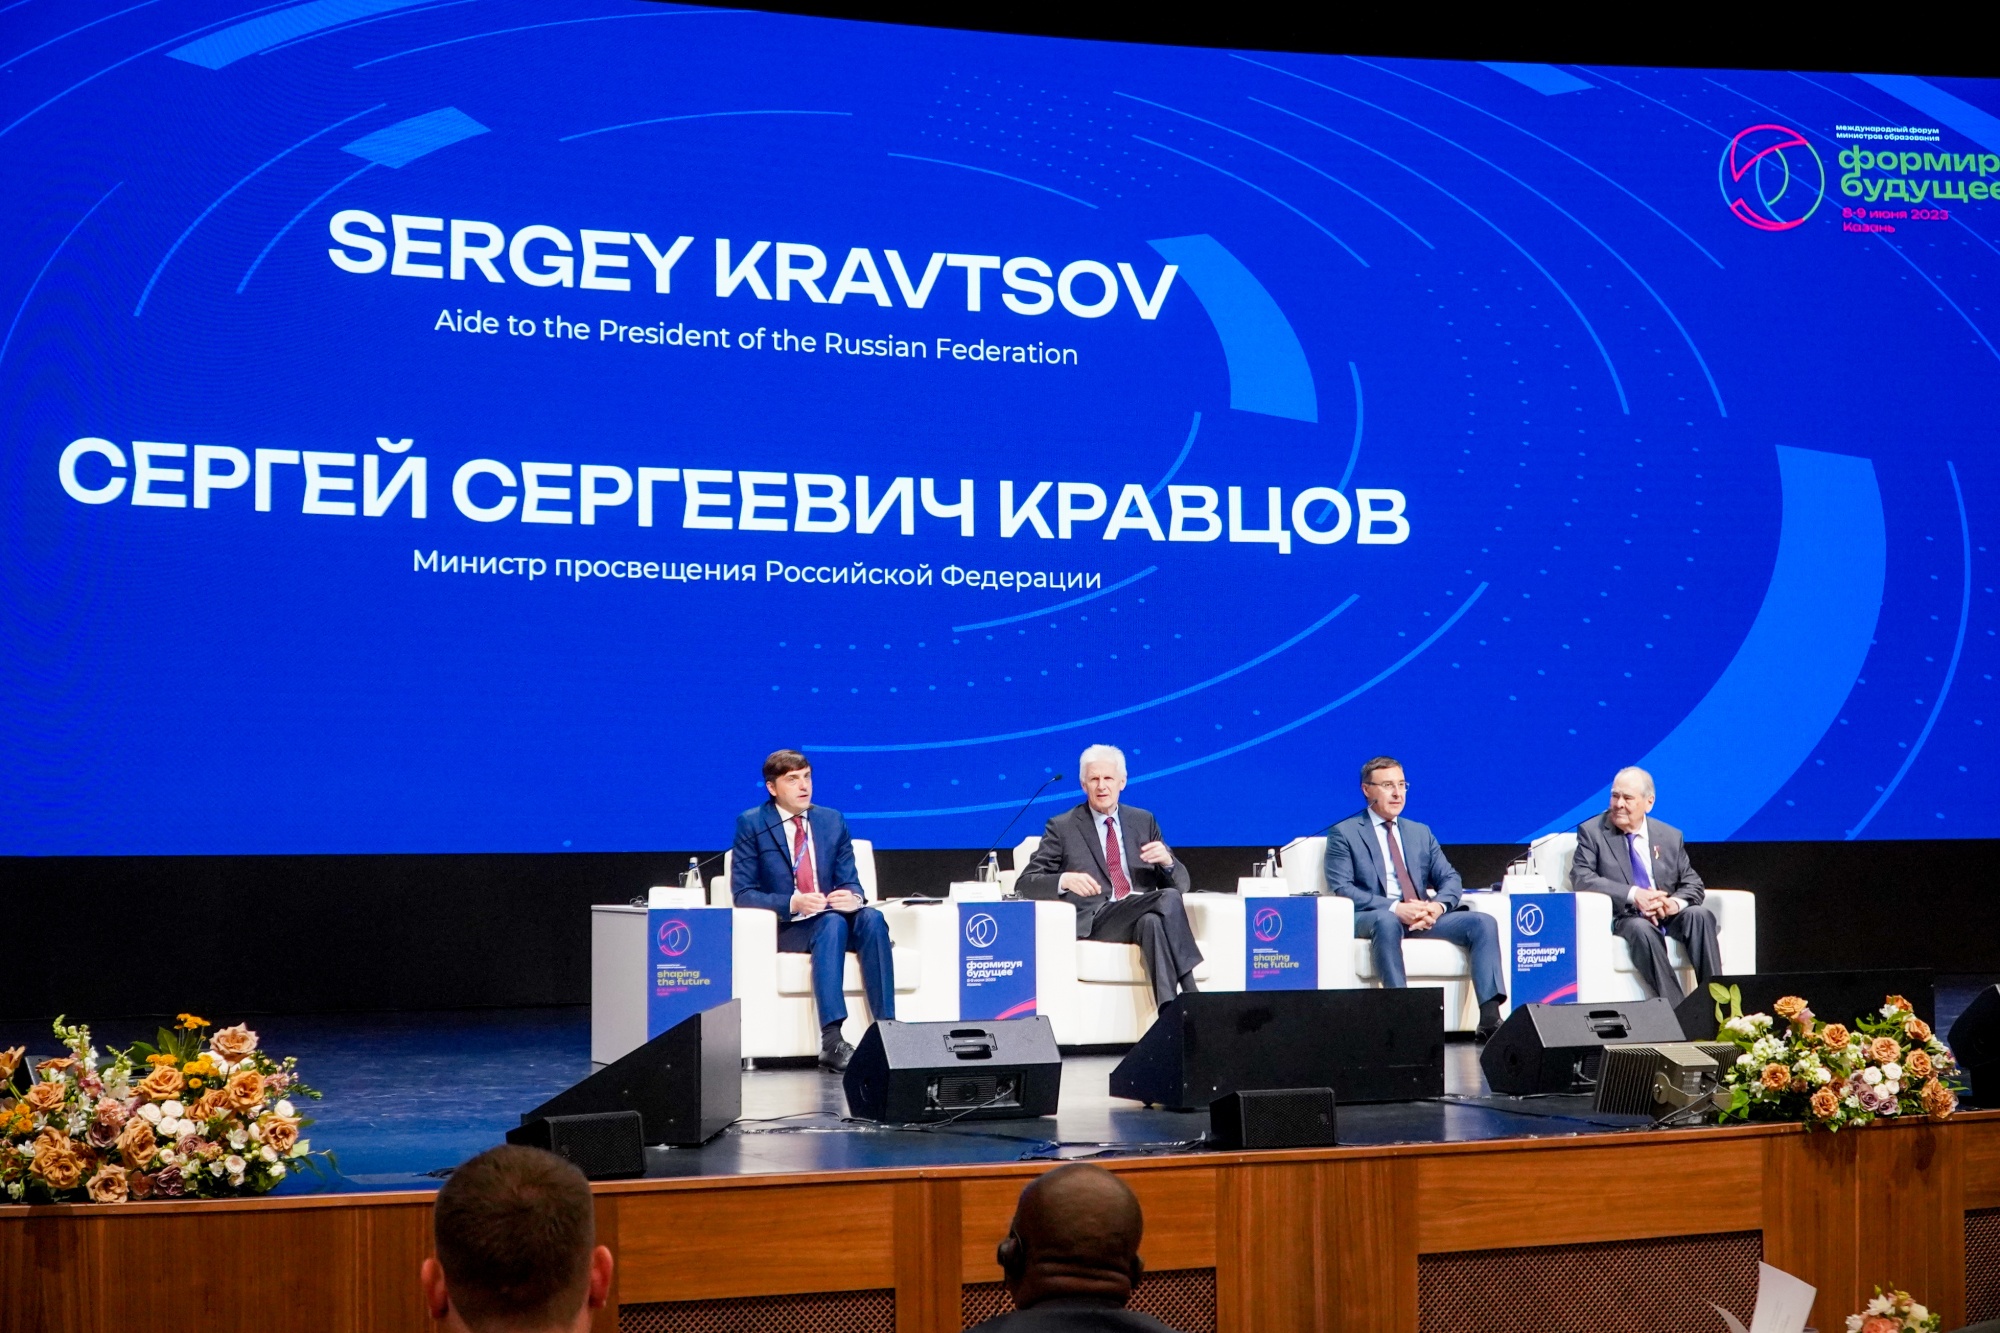 Сергей Кравцов: «Мы готовы делиться нашим лучшим опытом в сфере образования с другими странами»